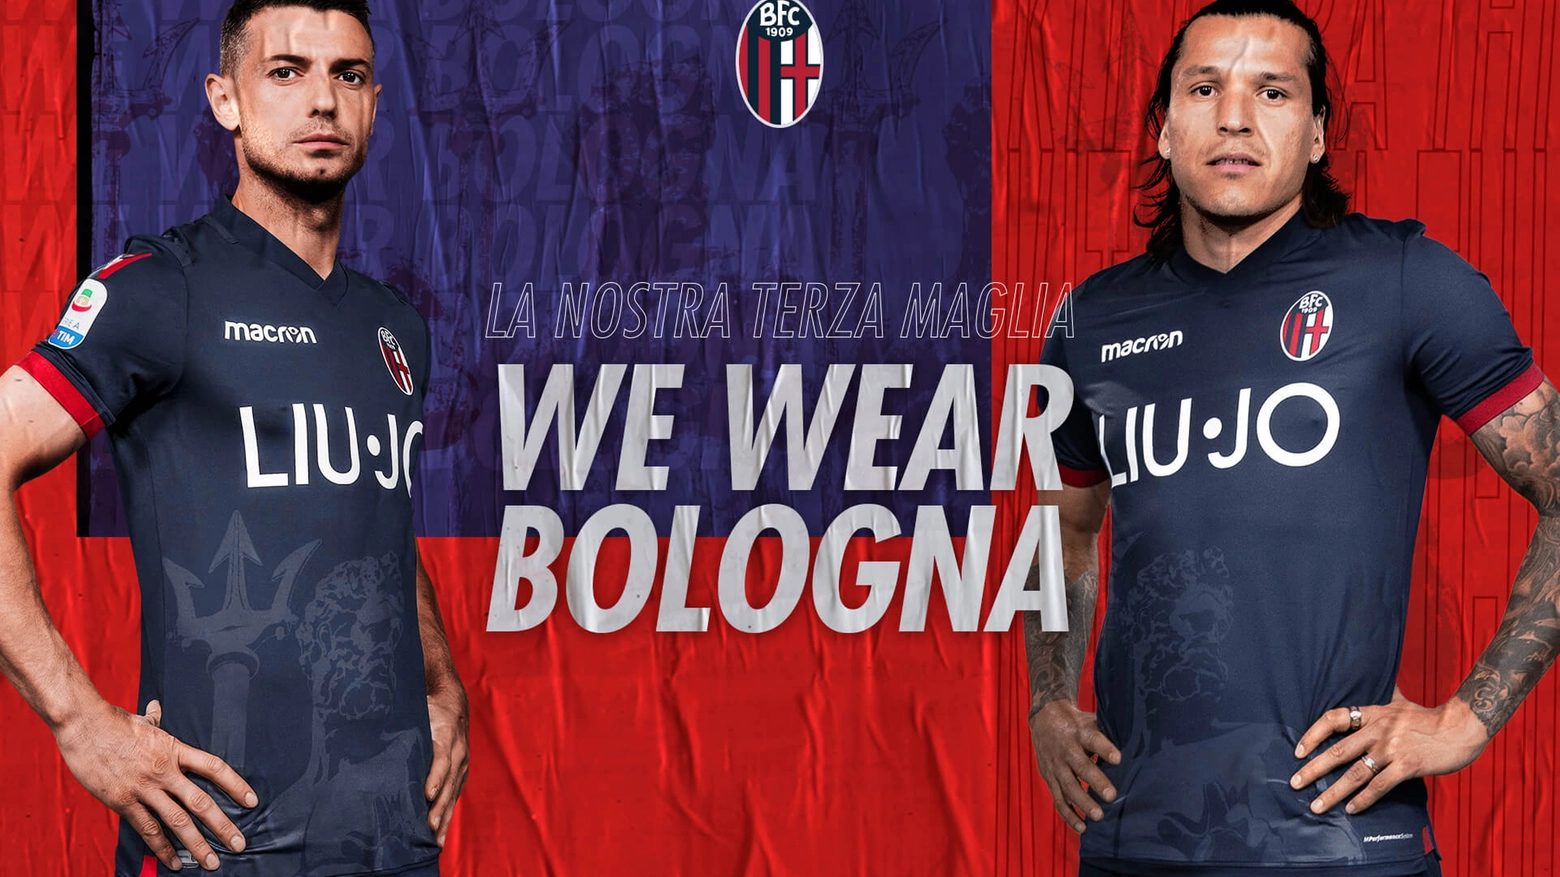 Bologna, il Nettuno sulla terza maglia del Bologna (foto Bfc)